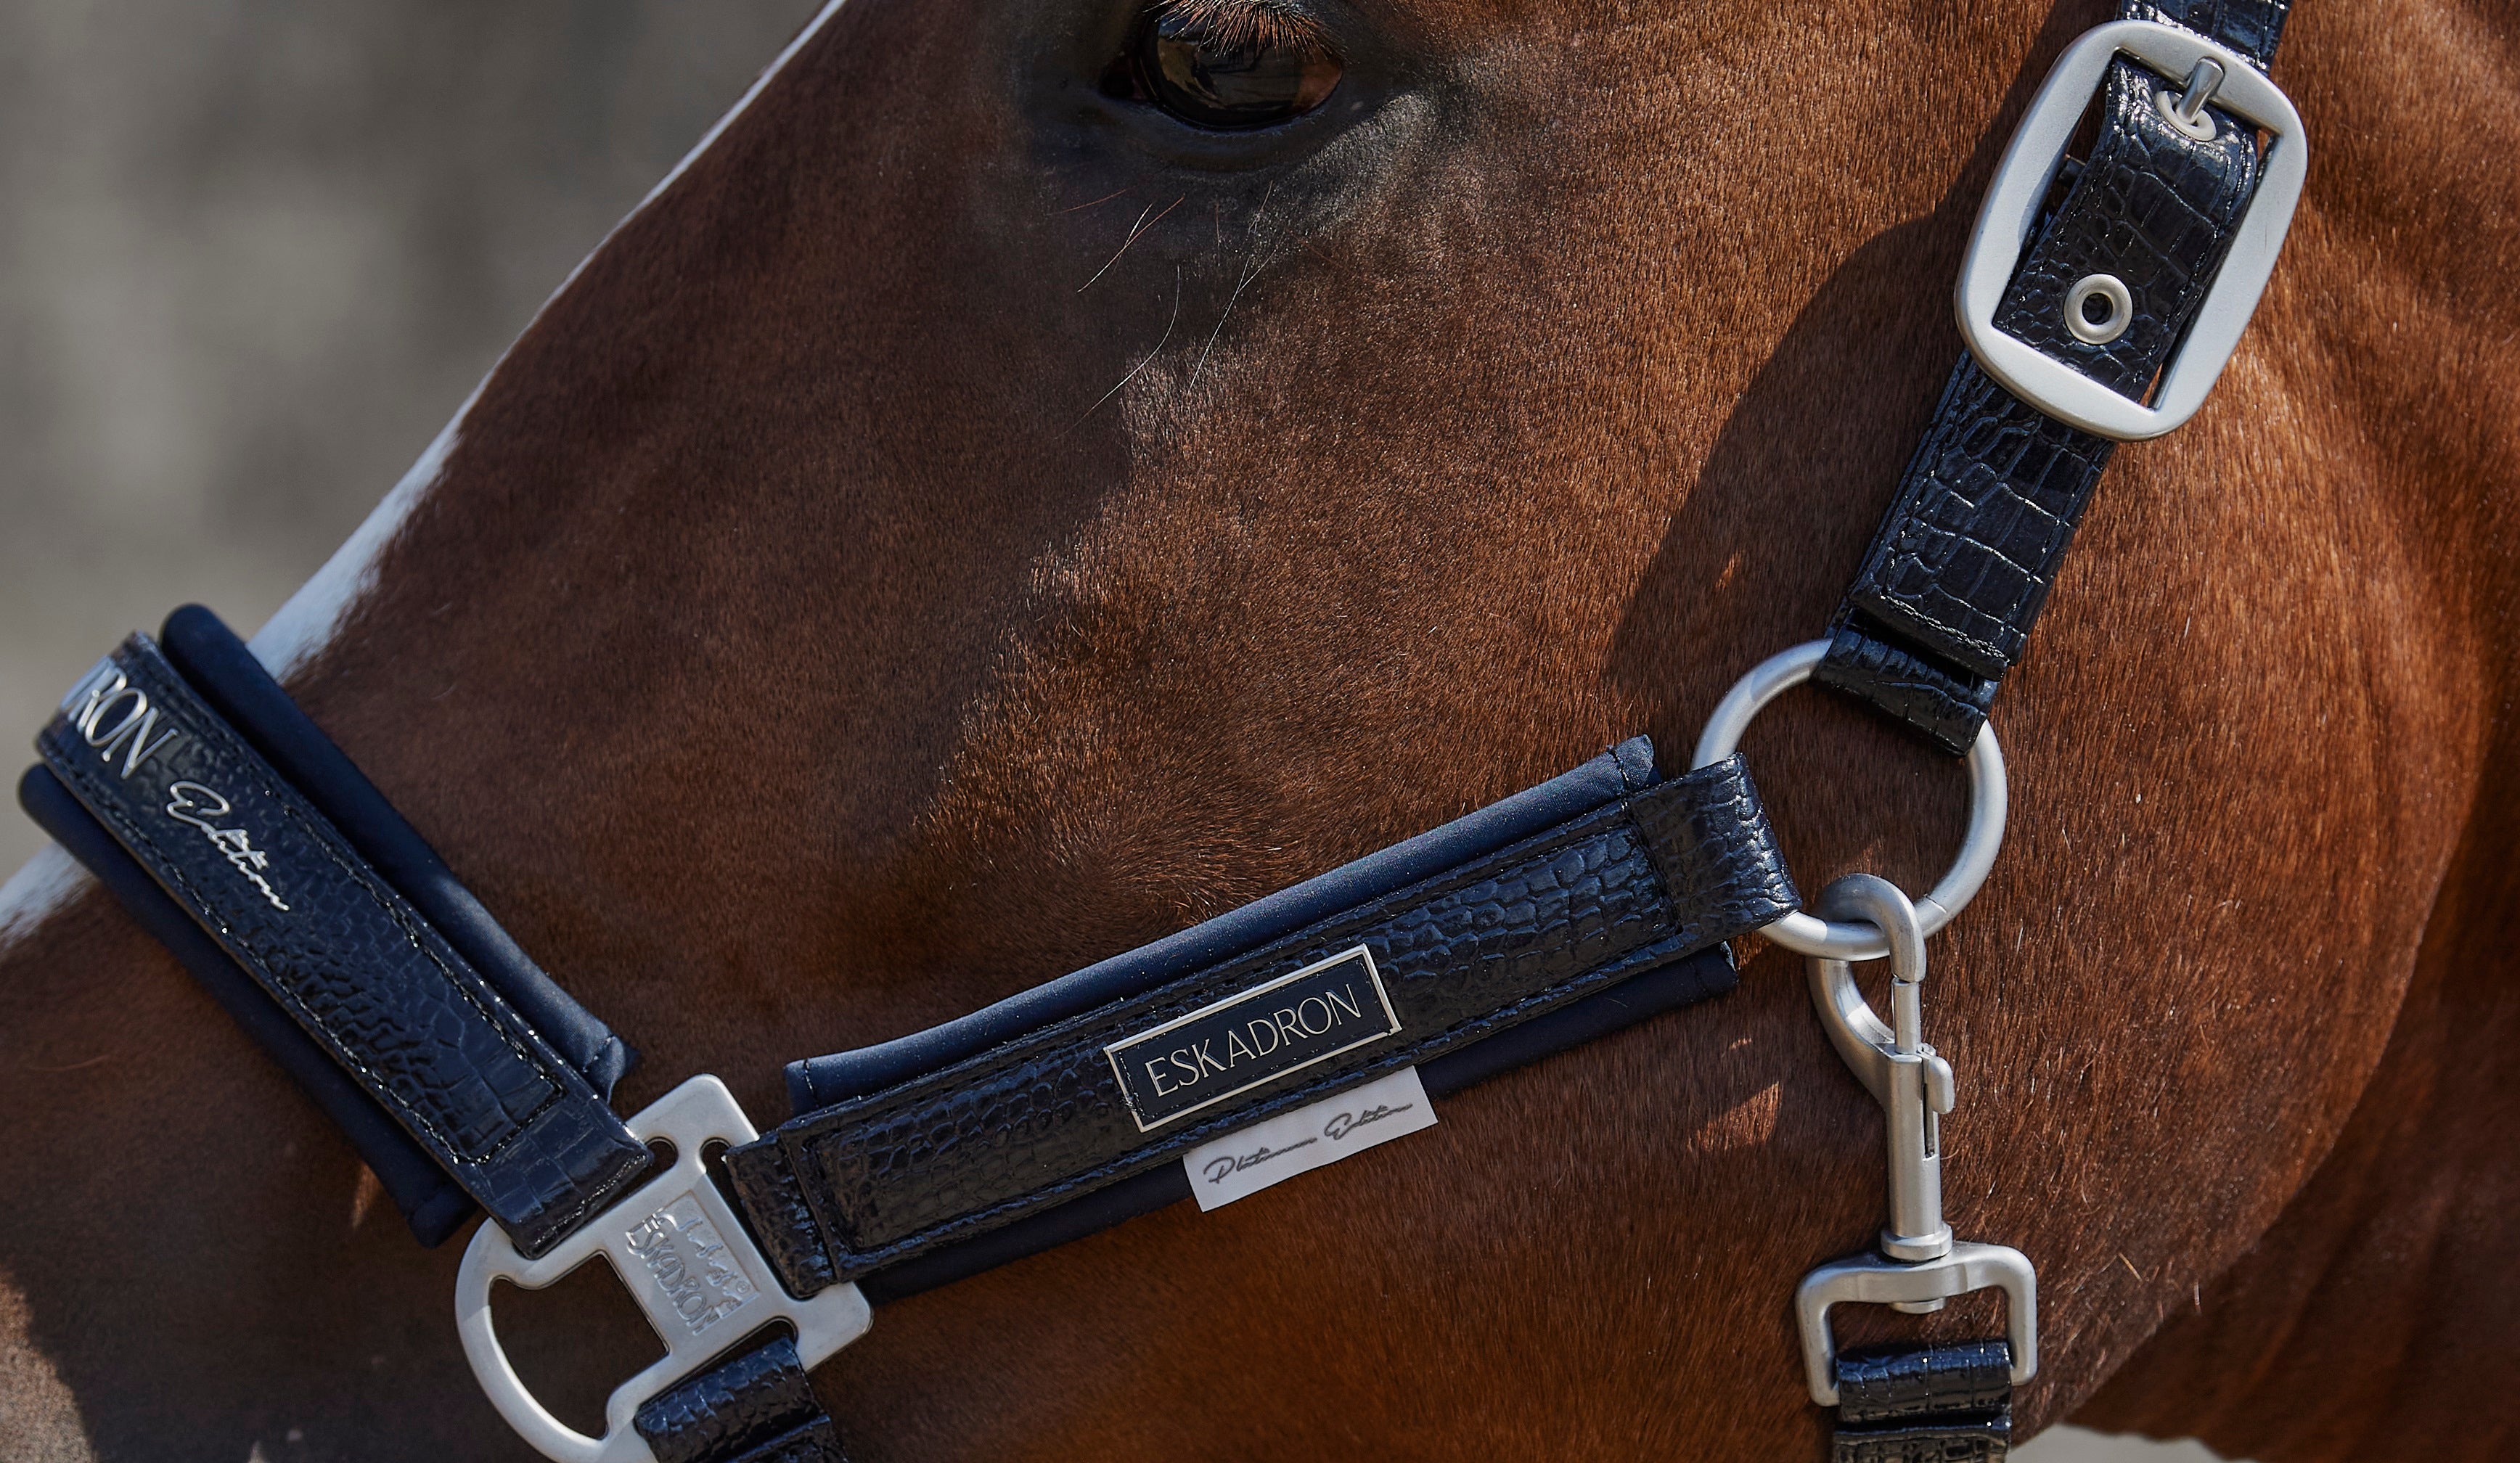 Kit licol et longe équitation Cheval et poney - Strass bleu noir